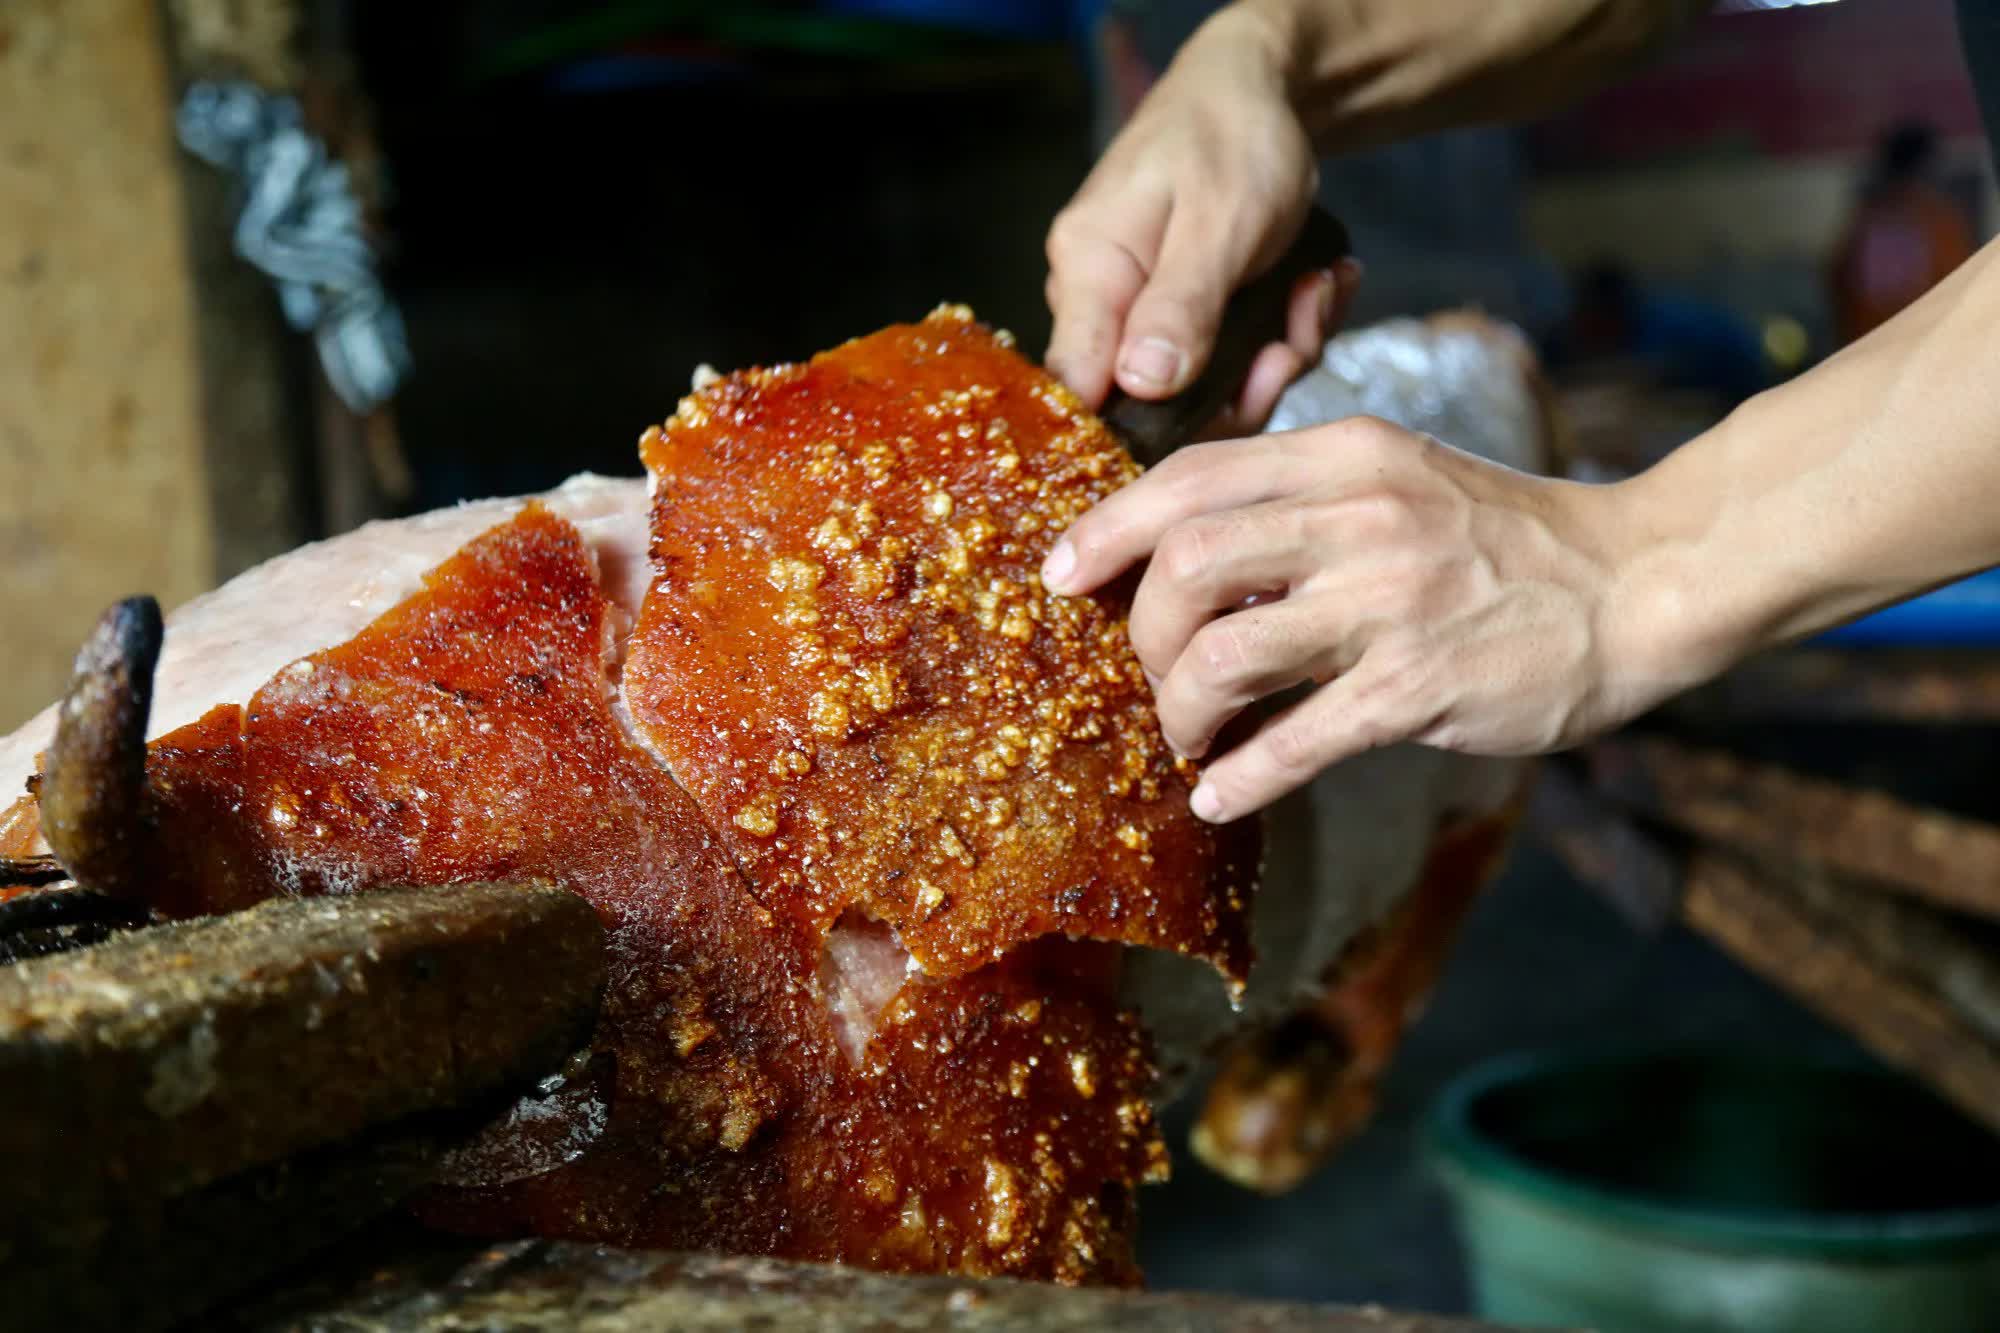 Địa chỉ của món thịt lợn ngon nhất trái đất: Rất gần Việt Nam, ngon tới độ đầu bếp giỏi nhất nước Pháp chưa chắc làm ra nổi - Ảnh 1.